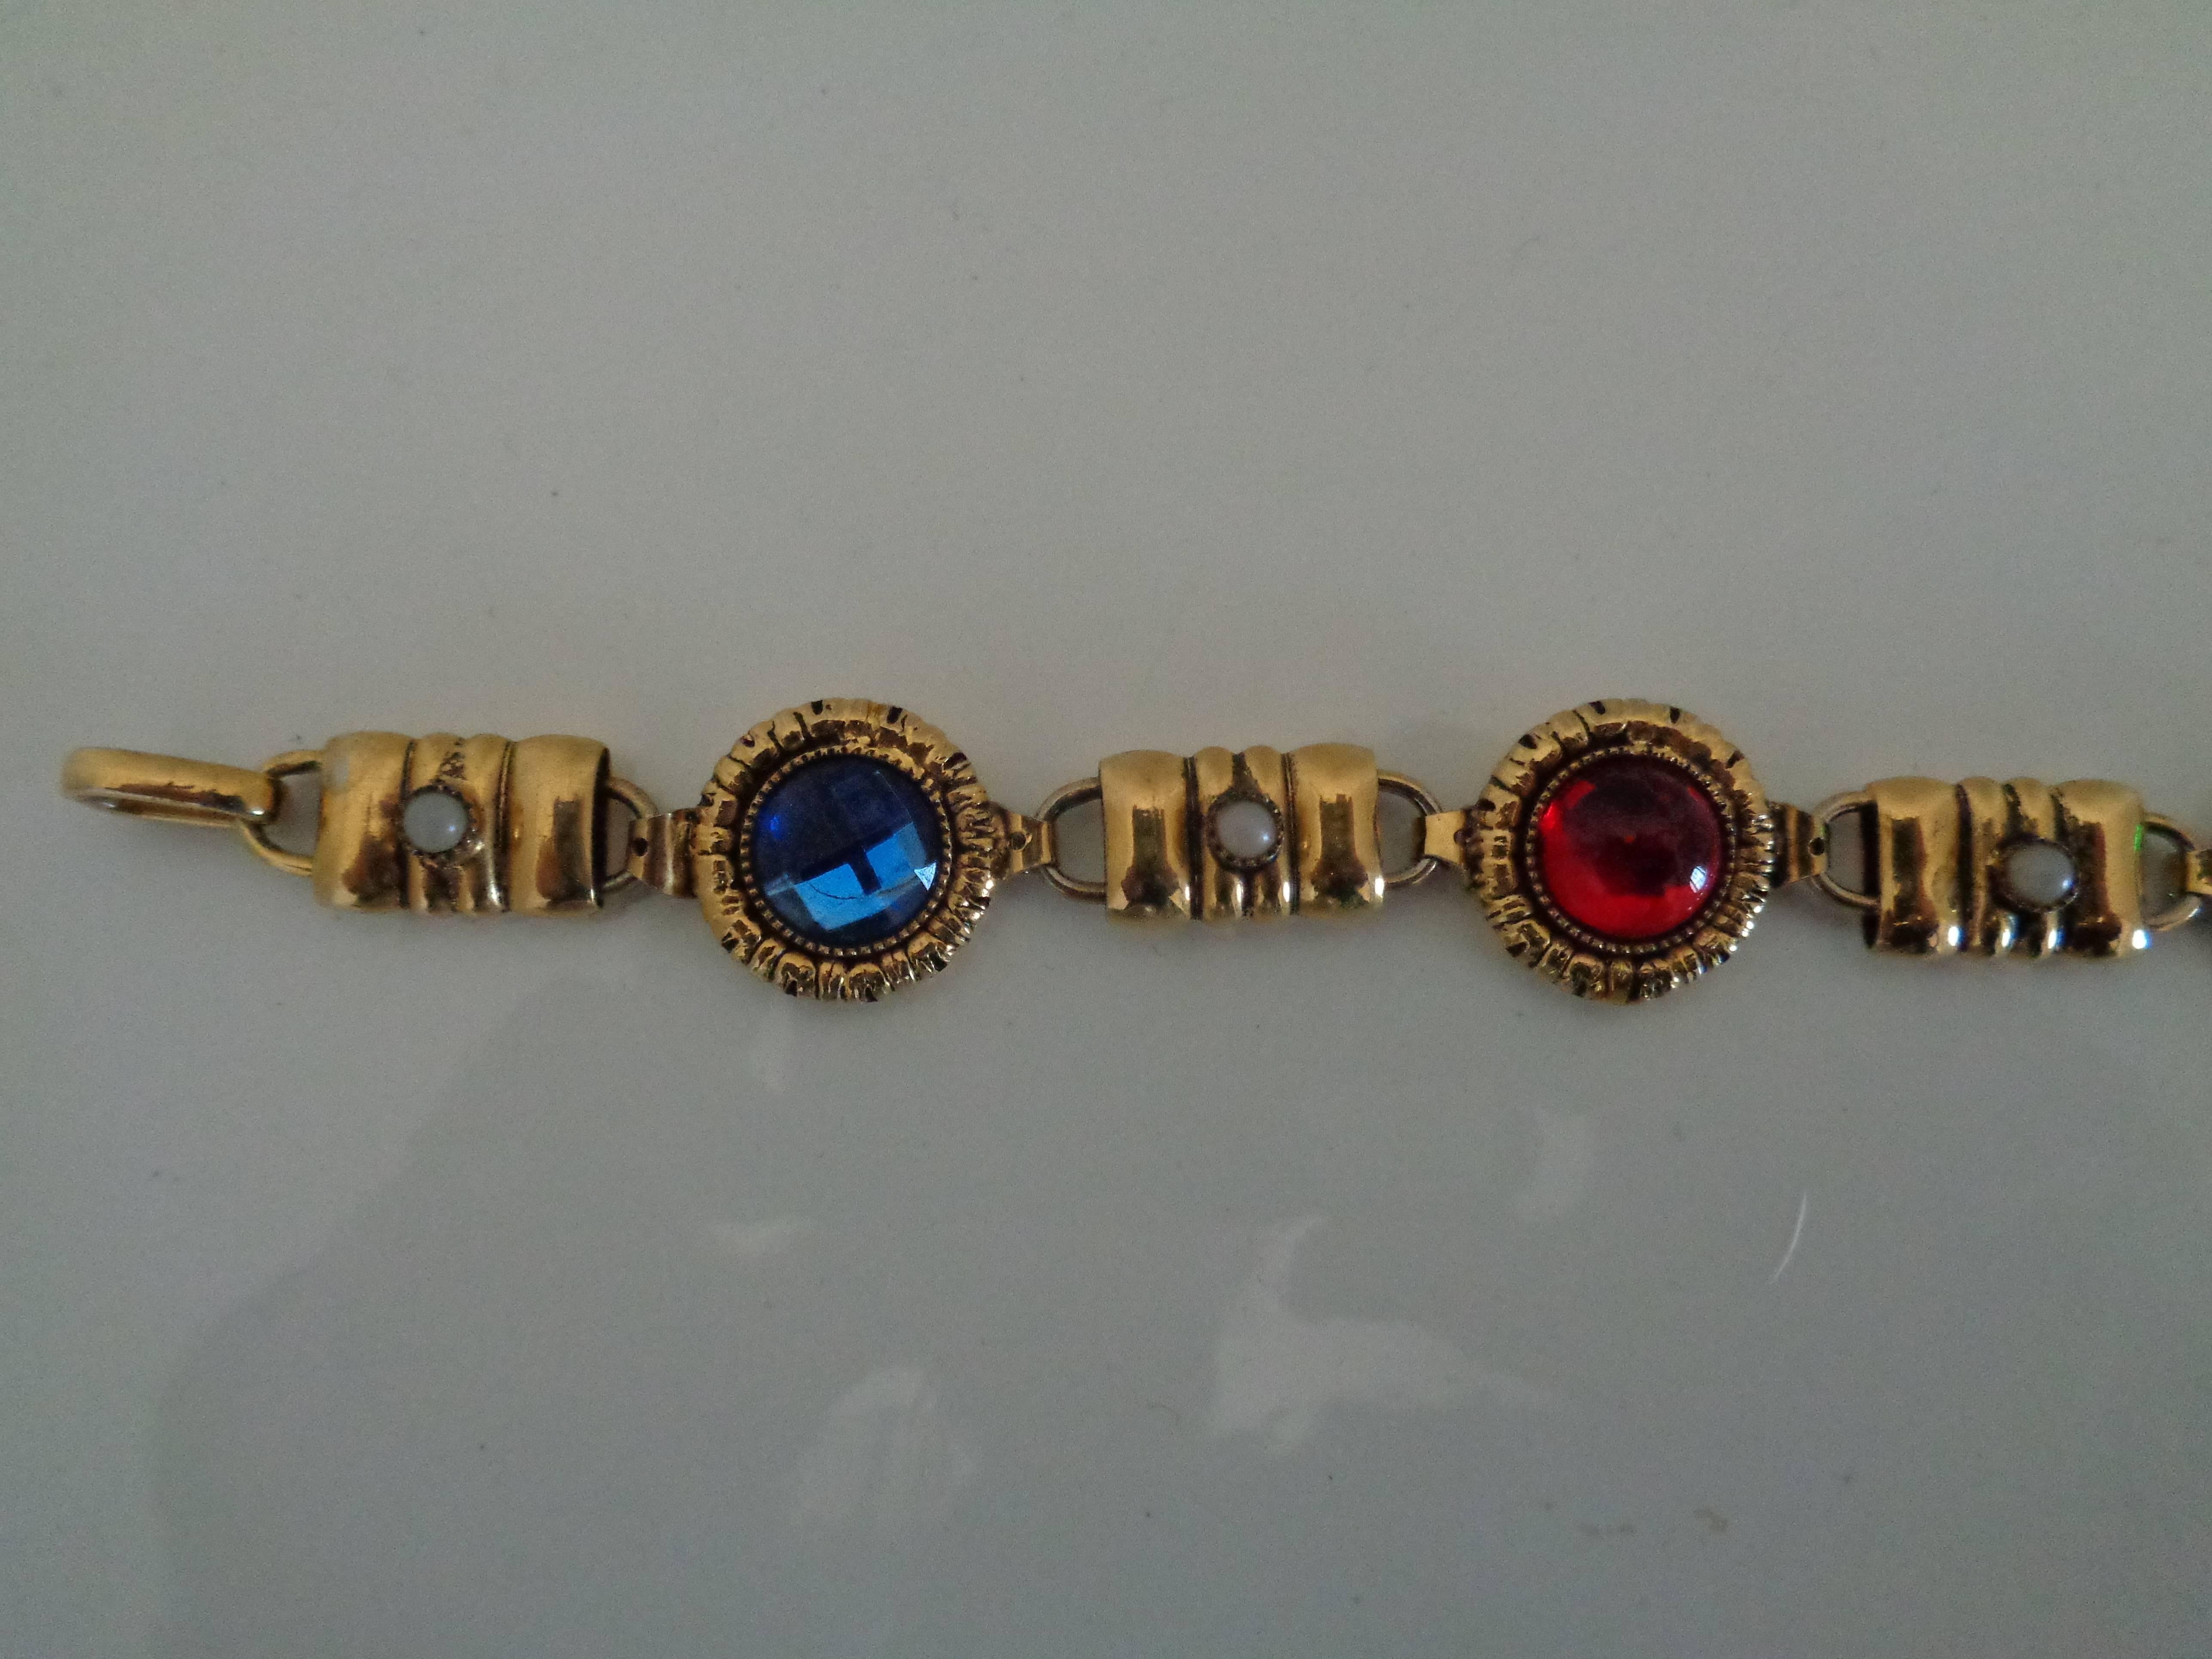 Gold Tone multicoloured Stones Bracelet

total lenght 20 cm